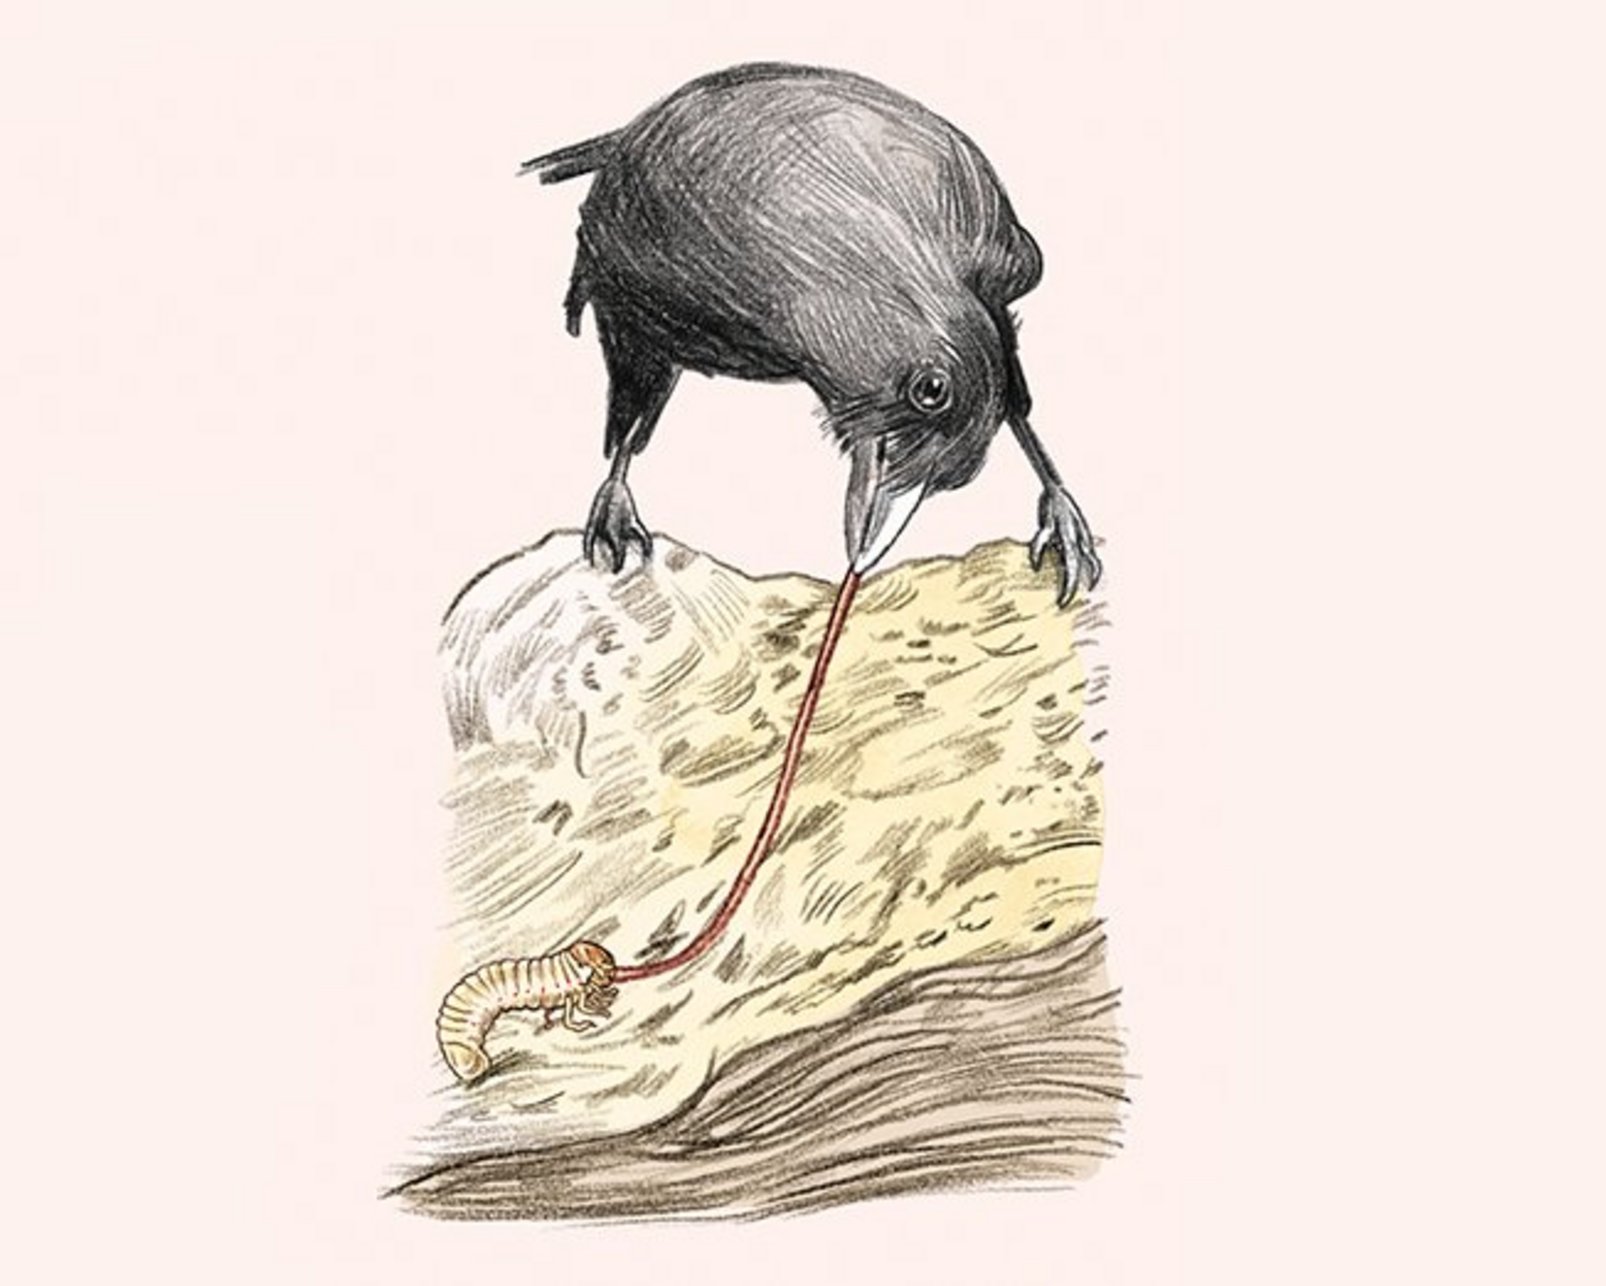 Illustration einer Krähe, die auf einem Heuhaufen sitzt und mit einem Stock eine Made aus dem Haufen holen will.